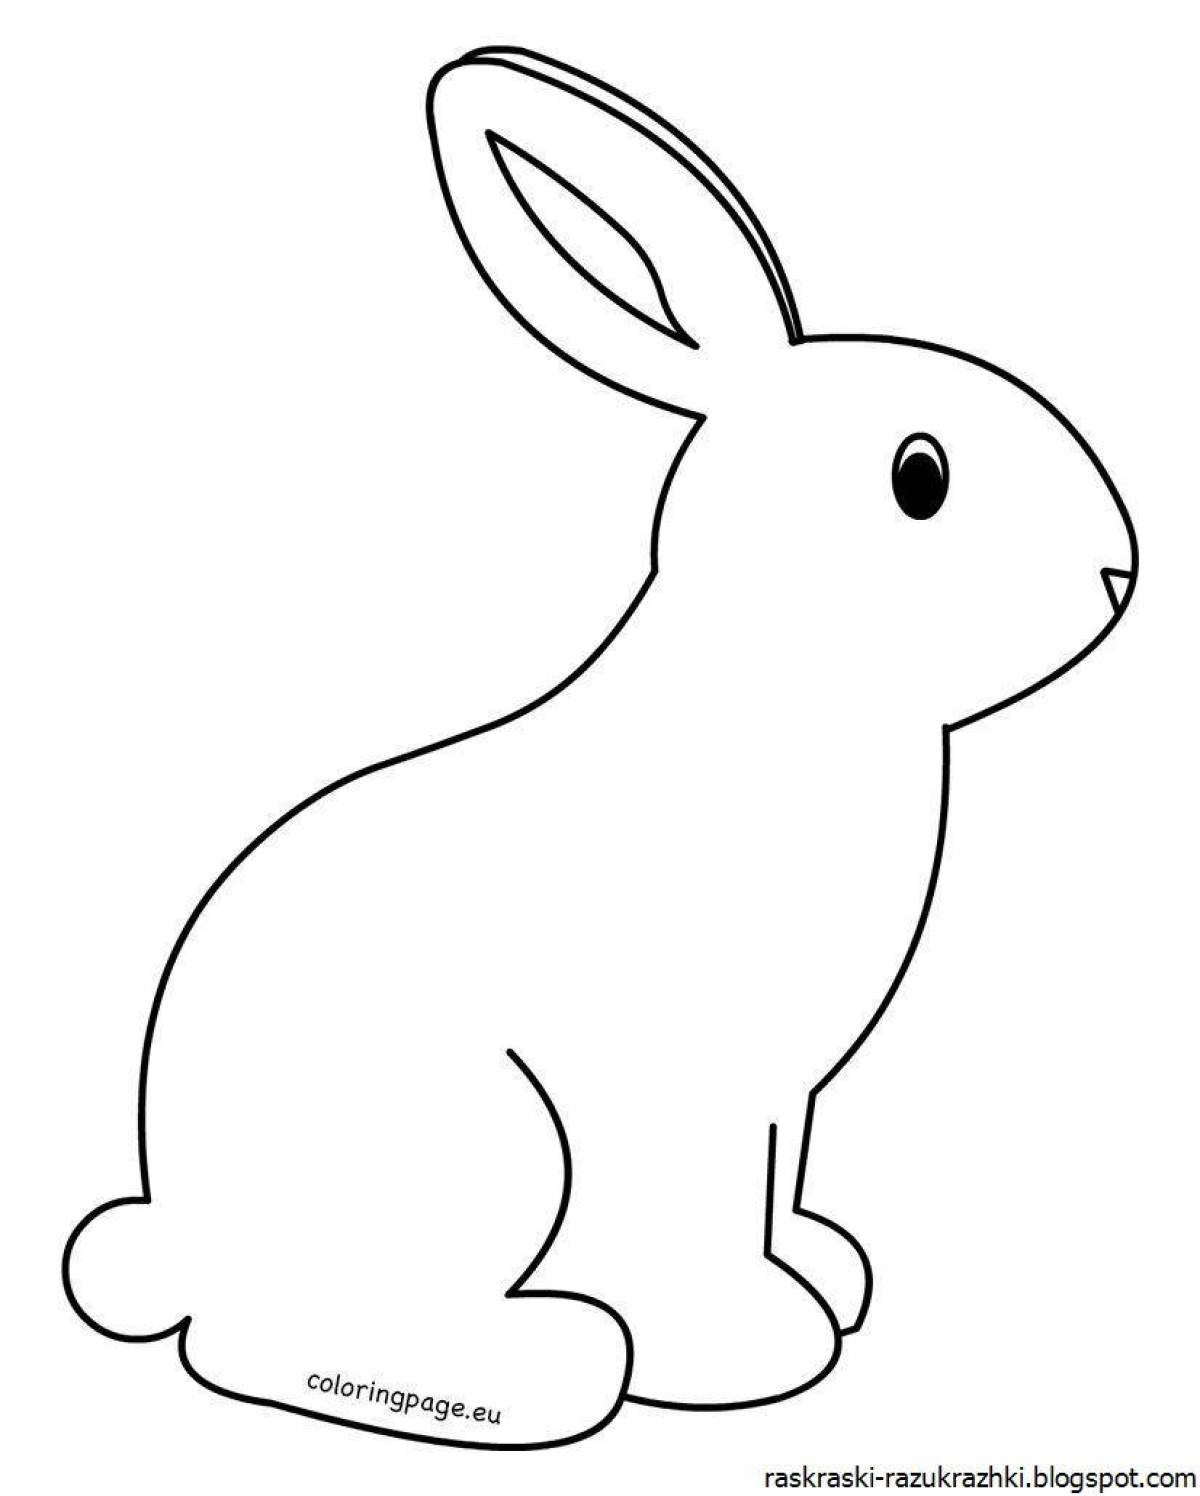 Анимированная раскраска зайца для детей 3-4 лет